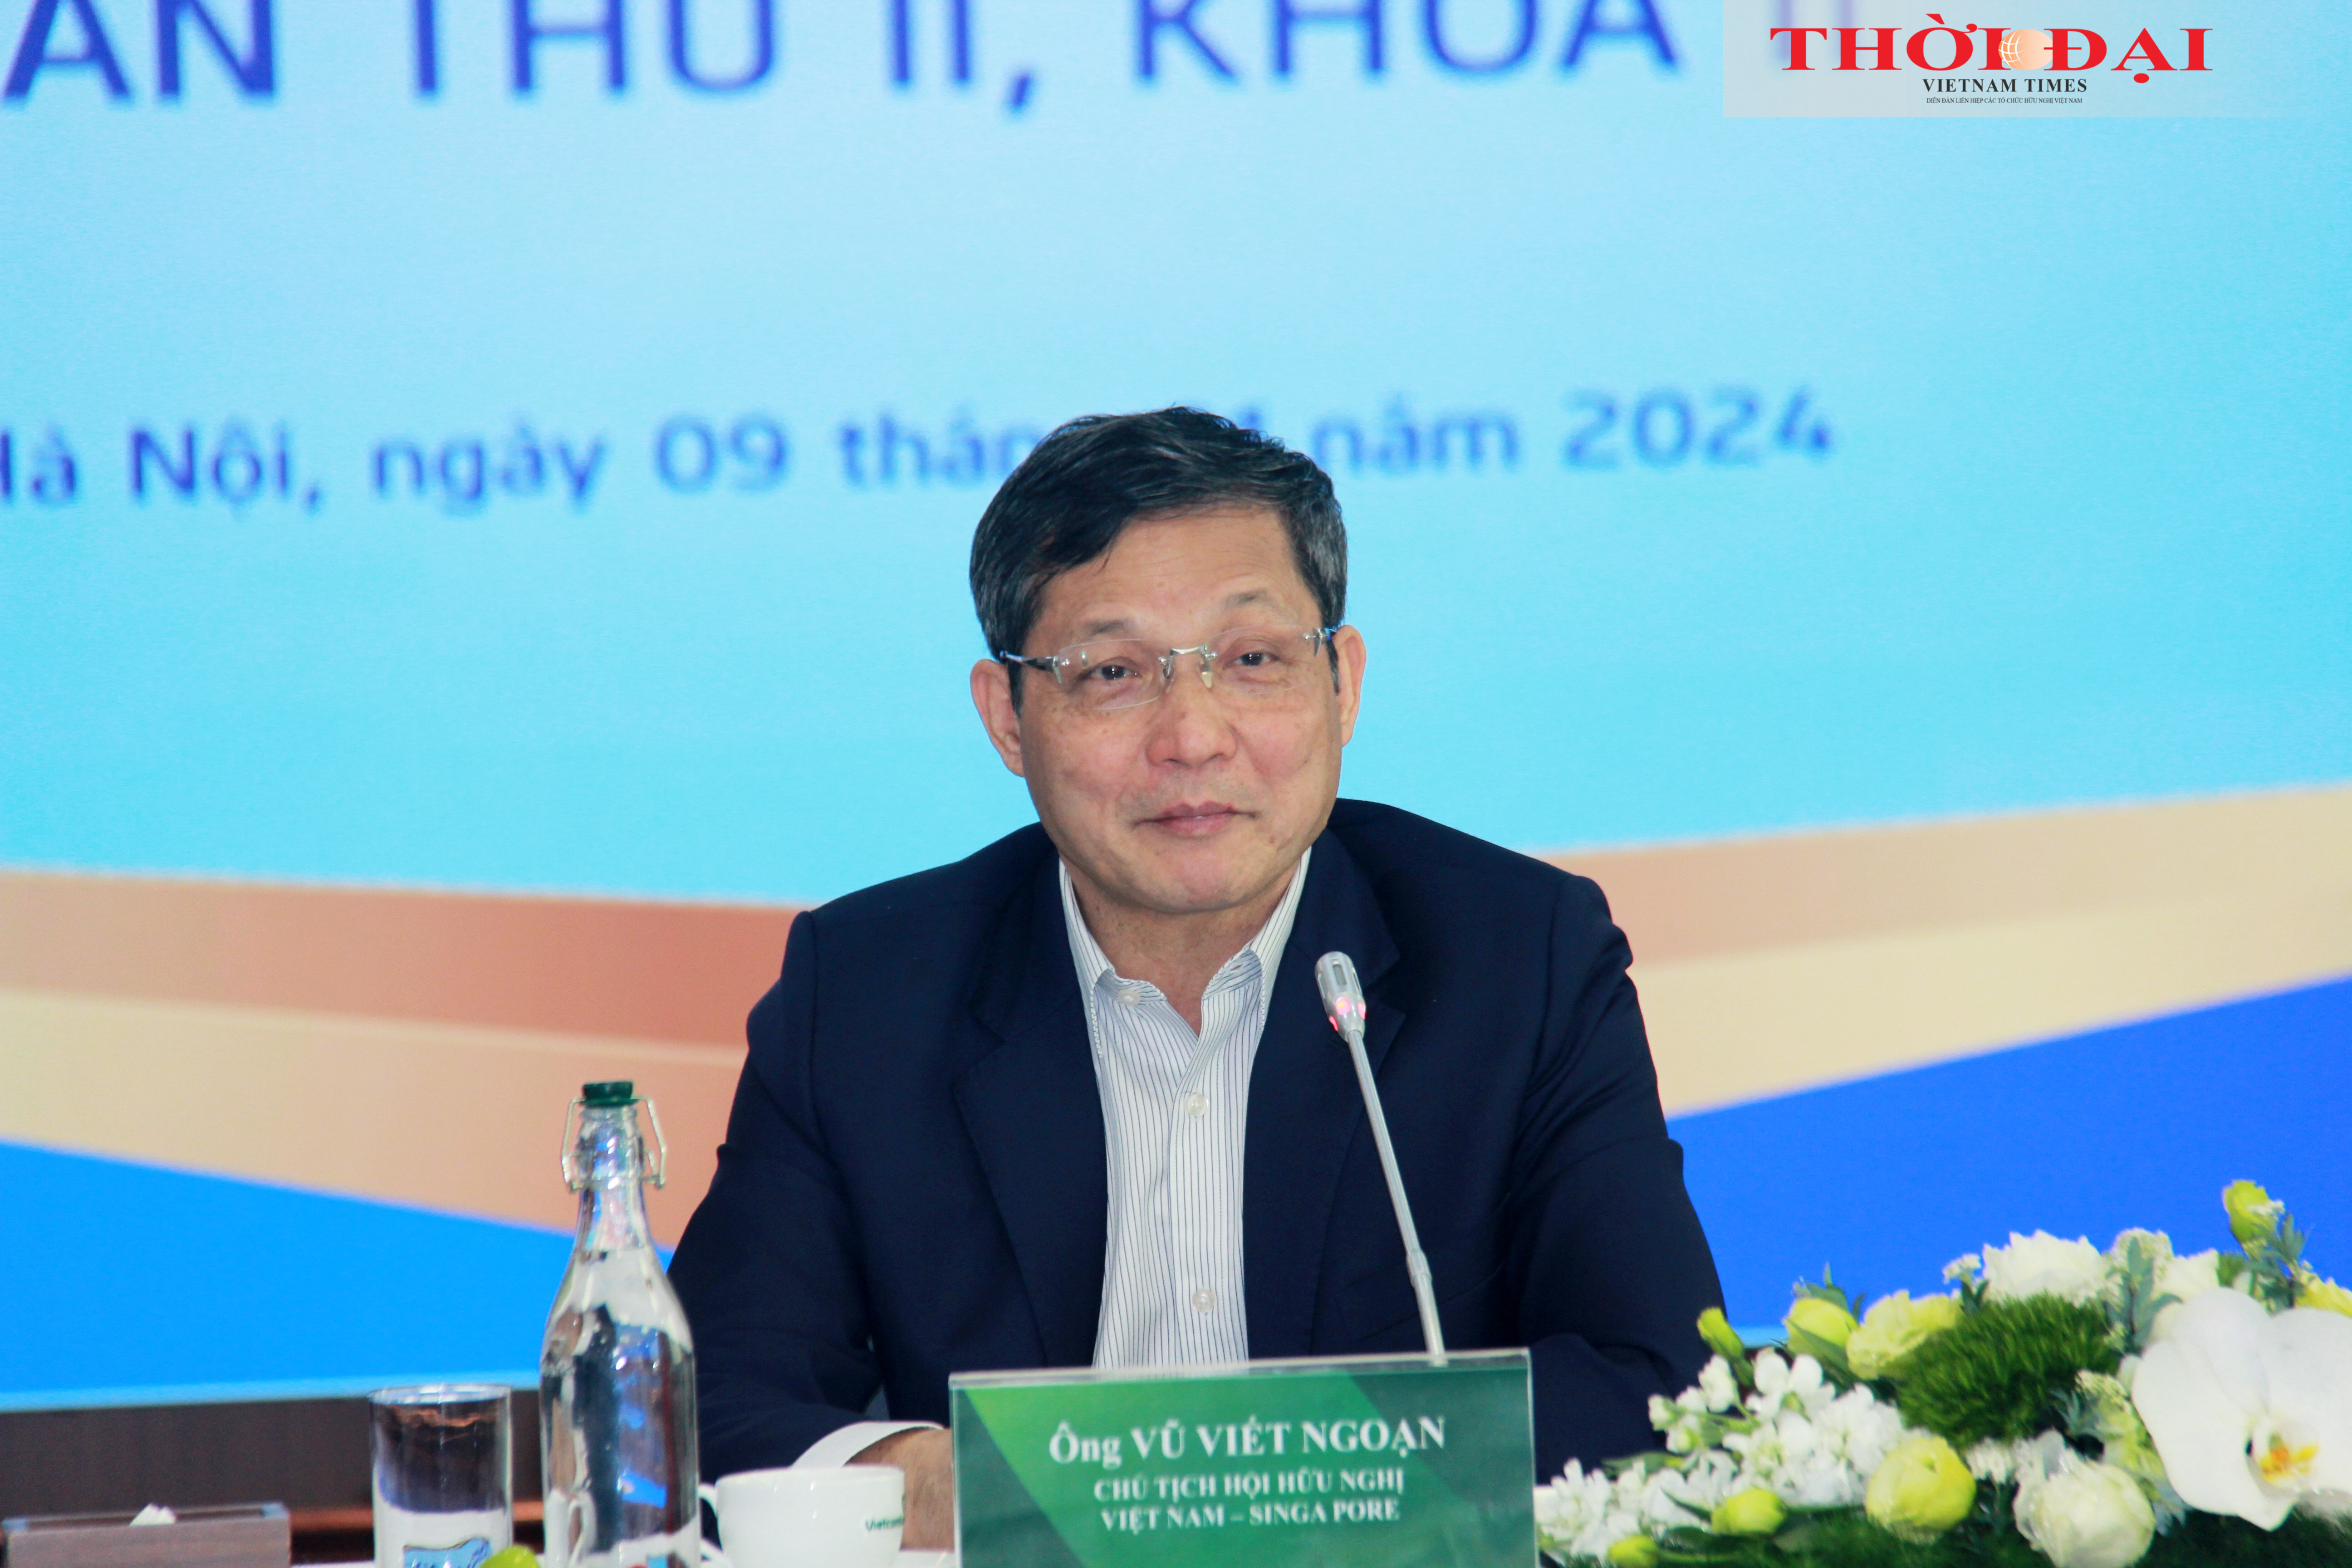 Ông Vũ Viết Ngoạn, Chủ tịch Hội hữu nghị Việt Nam - Singapore phát biểu tại Hội nghị. (Ảnh: Thành Luân)